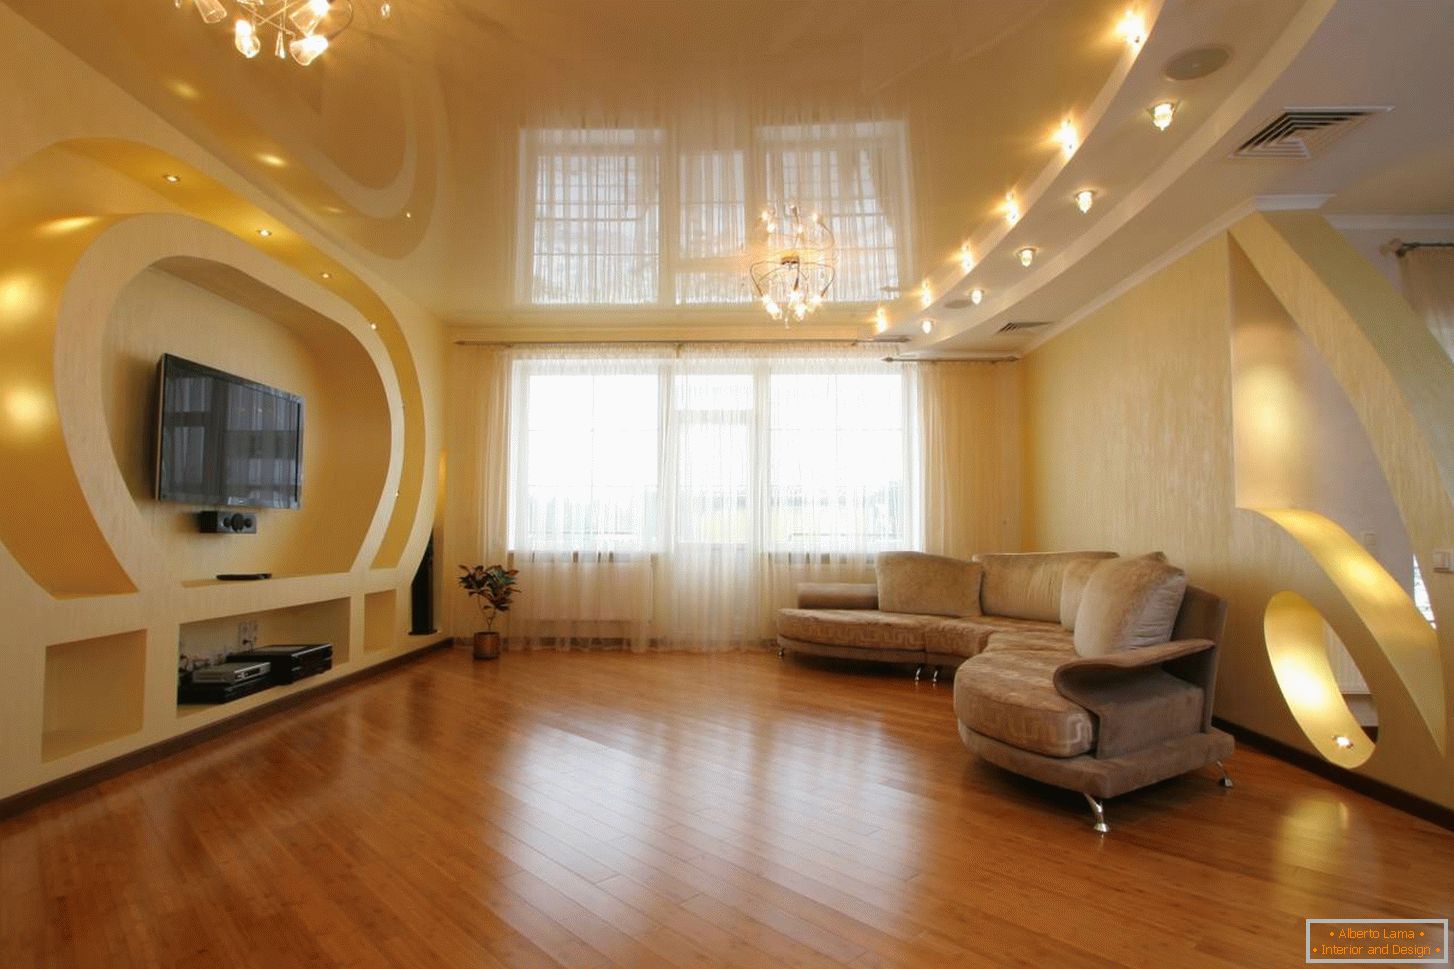 Die sanft pfirsichfarbene Decke in der Farbe der allgemeinen Inneneinrichtung ist mit einer in Zonen unterteilten Beleuchtung ausgestattet. LED-Leuchten über dem Sofa und zwei Kronleuchter auf beiden Seiten des Raumes.